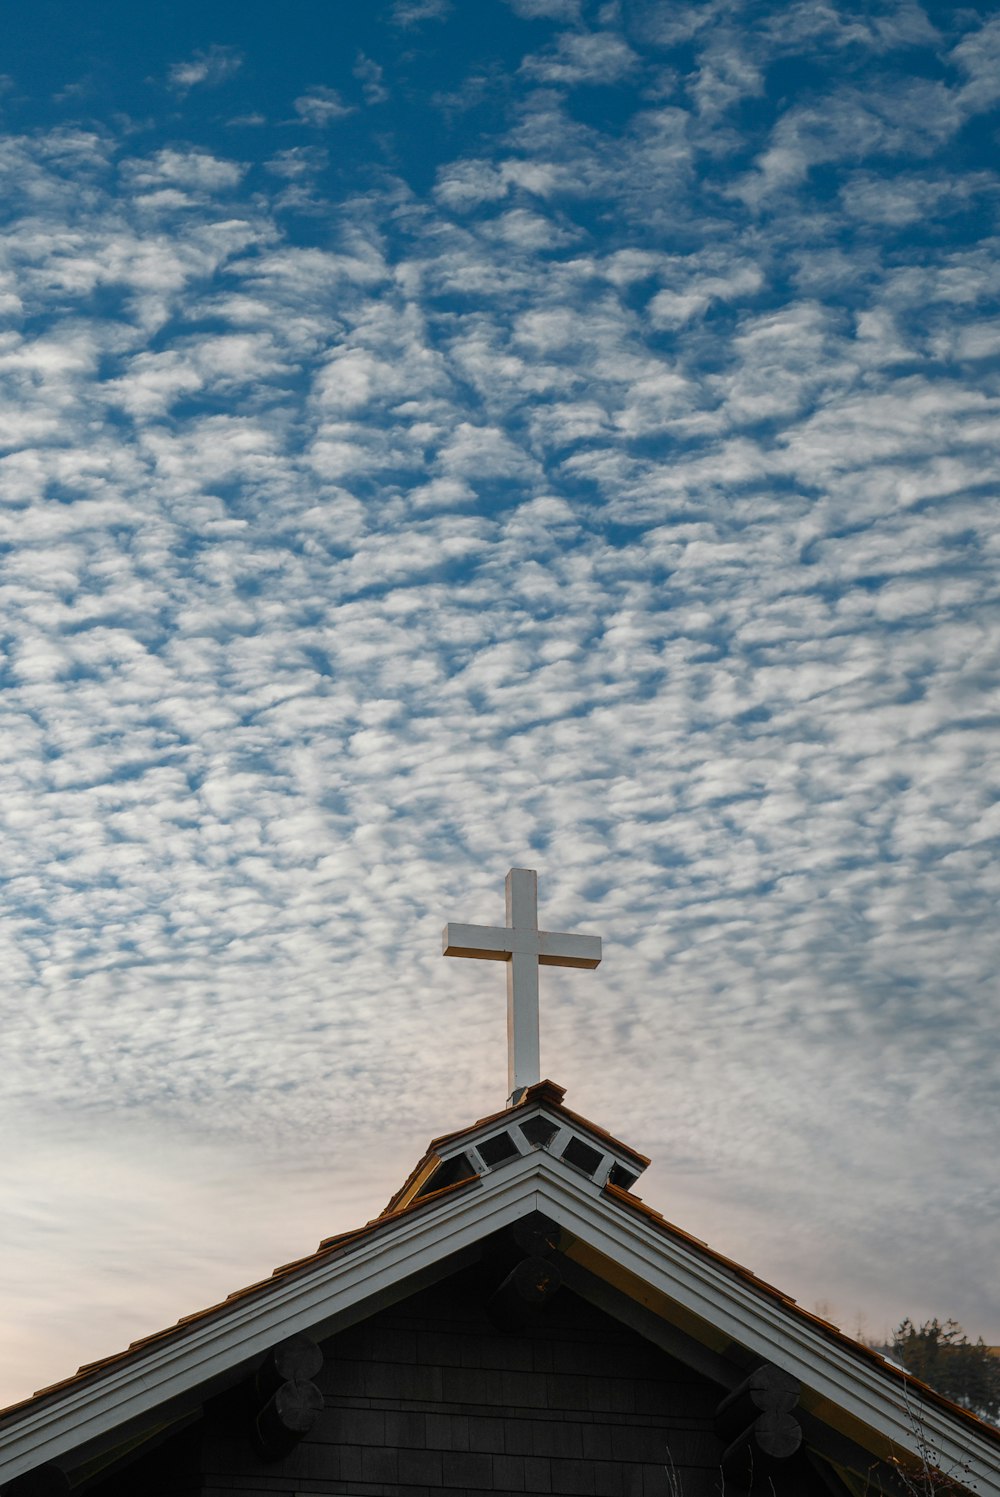 Iglesia marrón y blanca bajo el cielo azul y nubes blancas durante el día